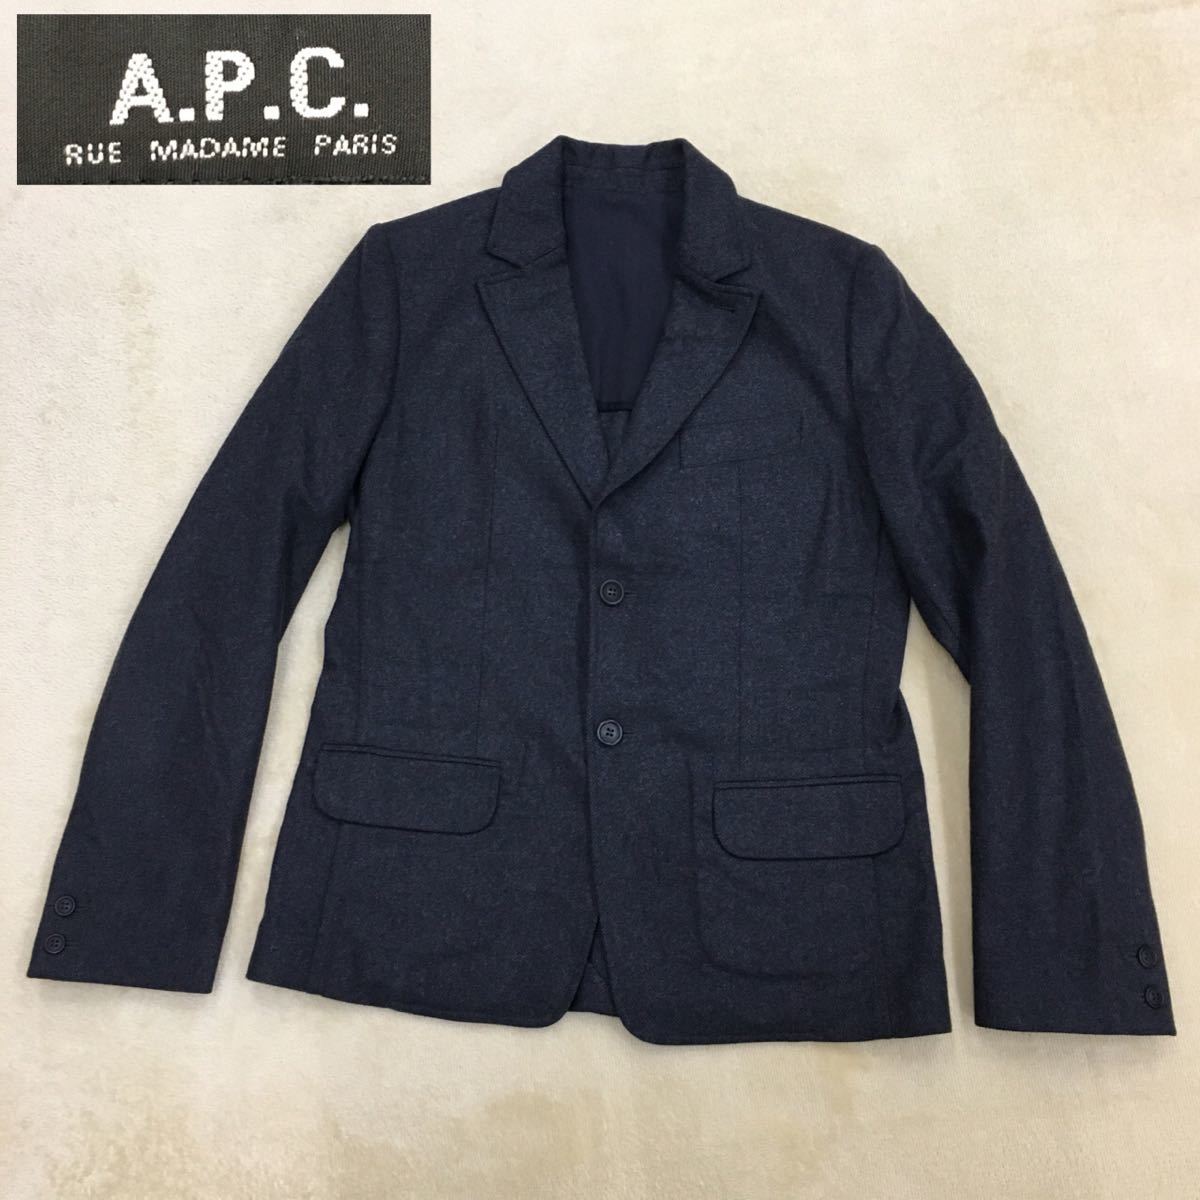 A.P.C. アーペーセー テーラードジャケット ブレザー ウール ナイロンブレンド センターベンツ 背抜き メンズ サイズS ポーランド製